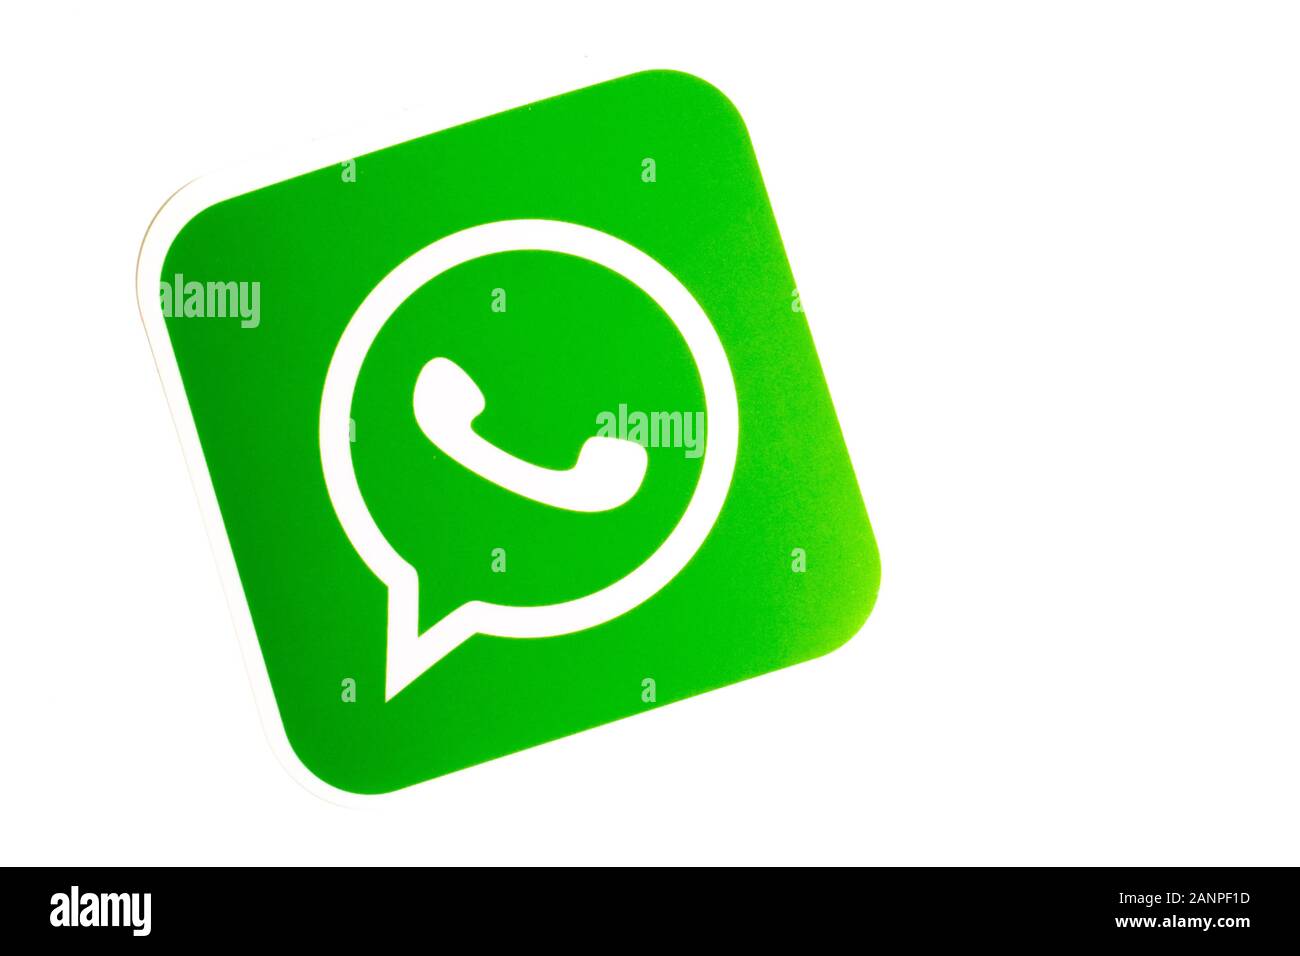 Los Angeles, Californie, États-Unis - 17 janvier 2020: Logo WhatsApp sur fond blanc avec espace de copie. Icône des médias sociaux, éditorial illustratif Banque D'Images